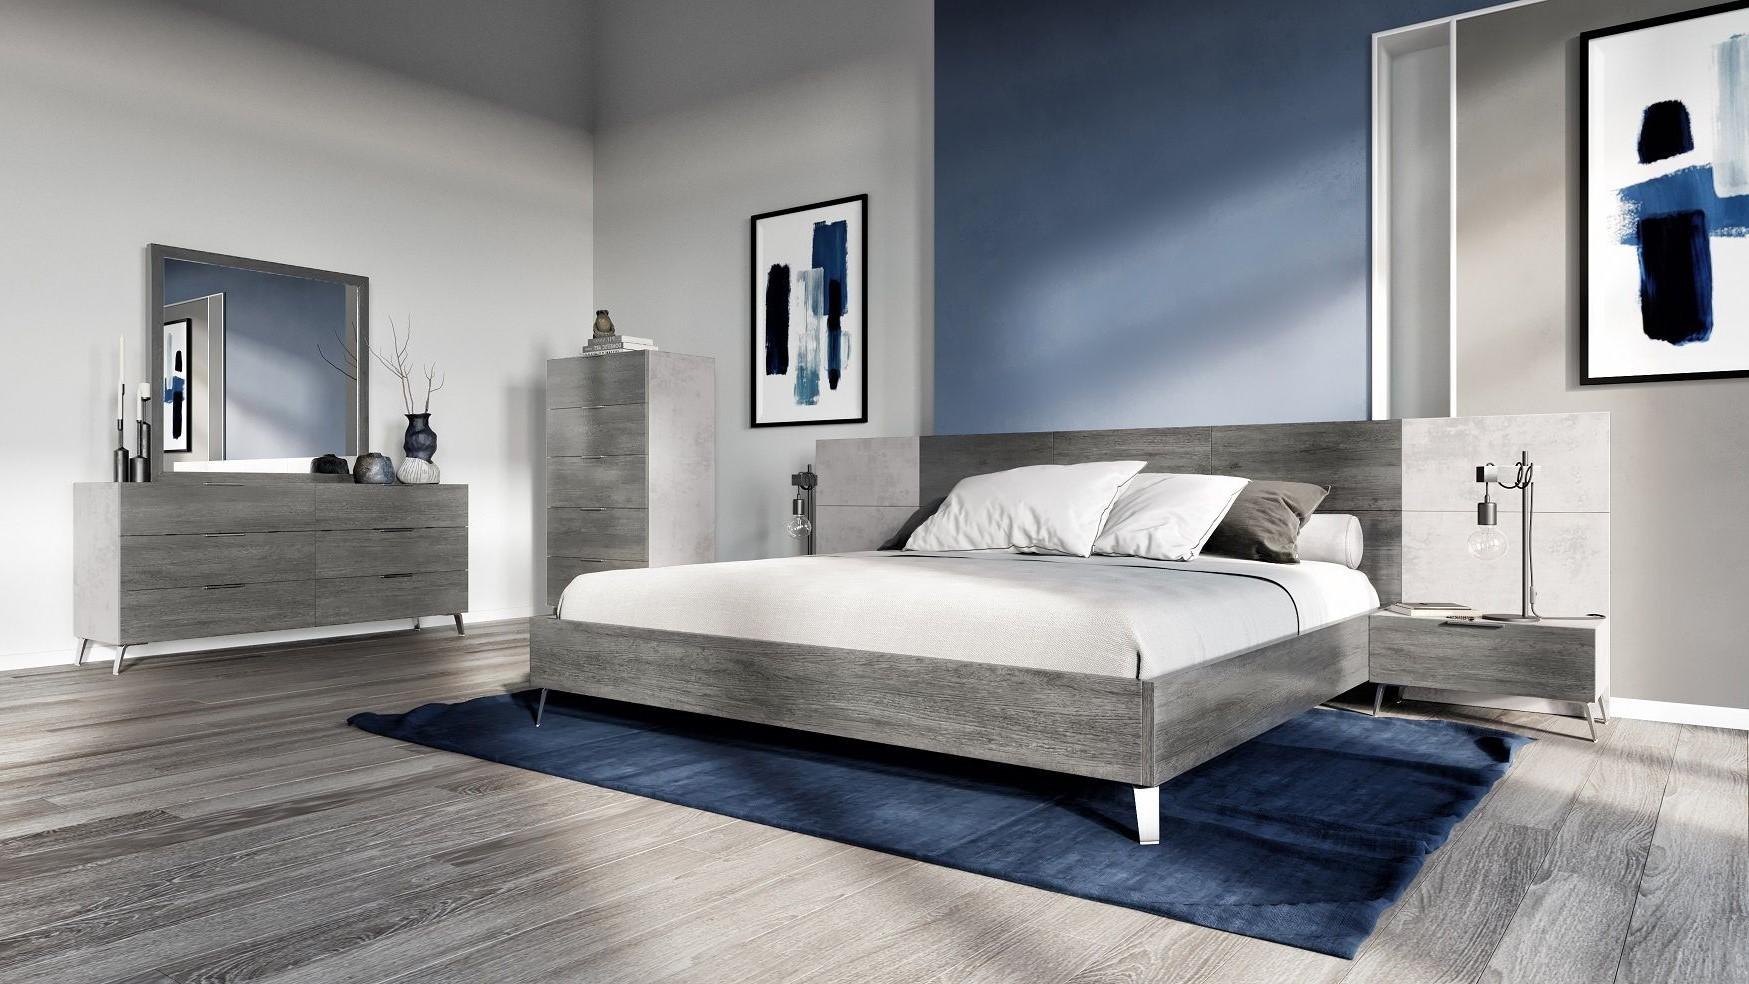 

    
Faux Concrete & Grey Queen Panel Bedroom Set 5Pcs by VIG Nova Domus Bronx
